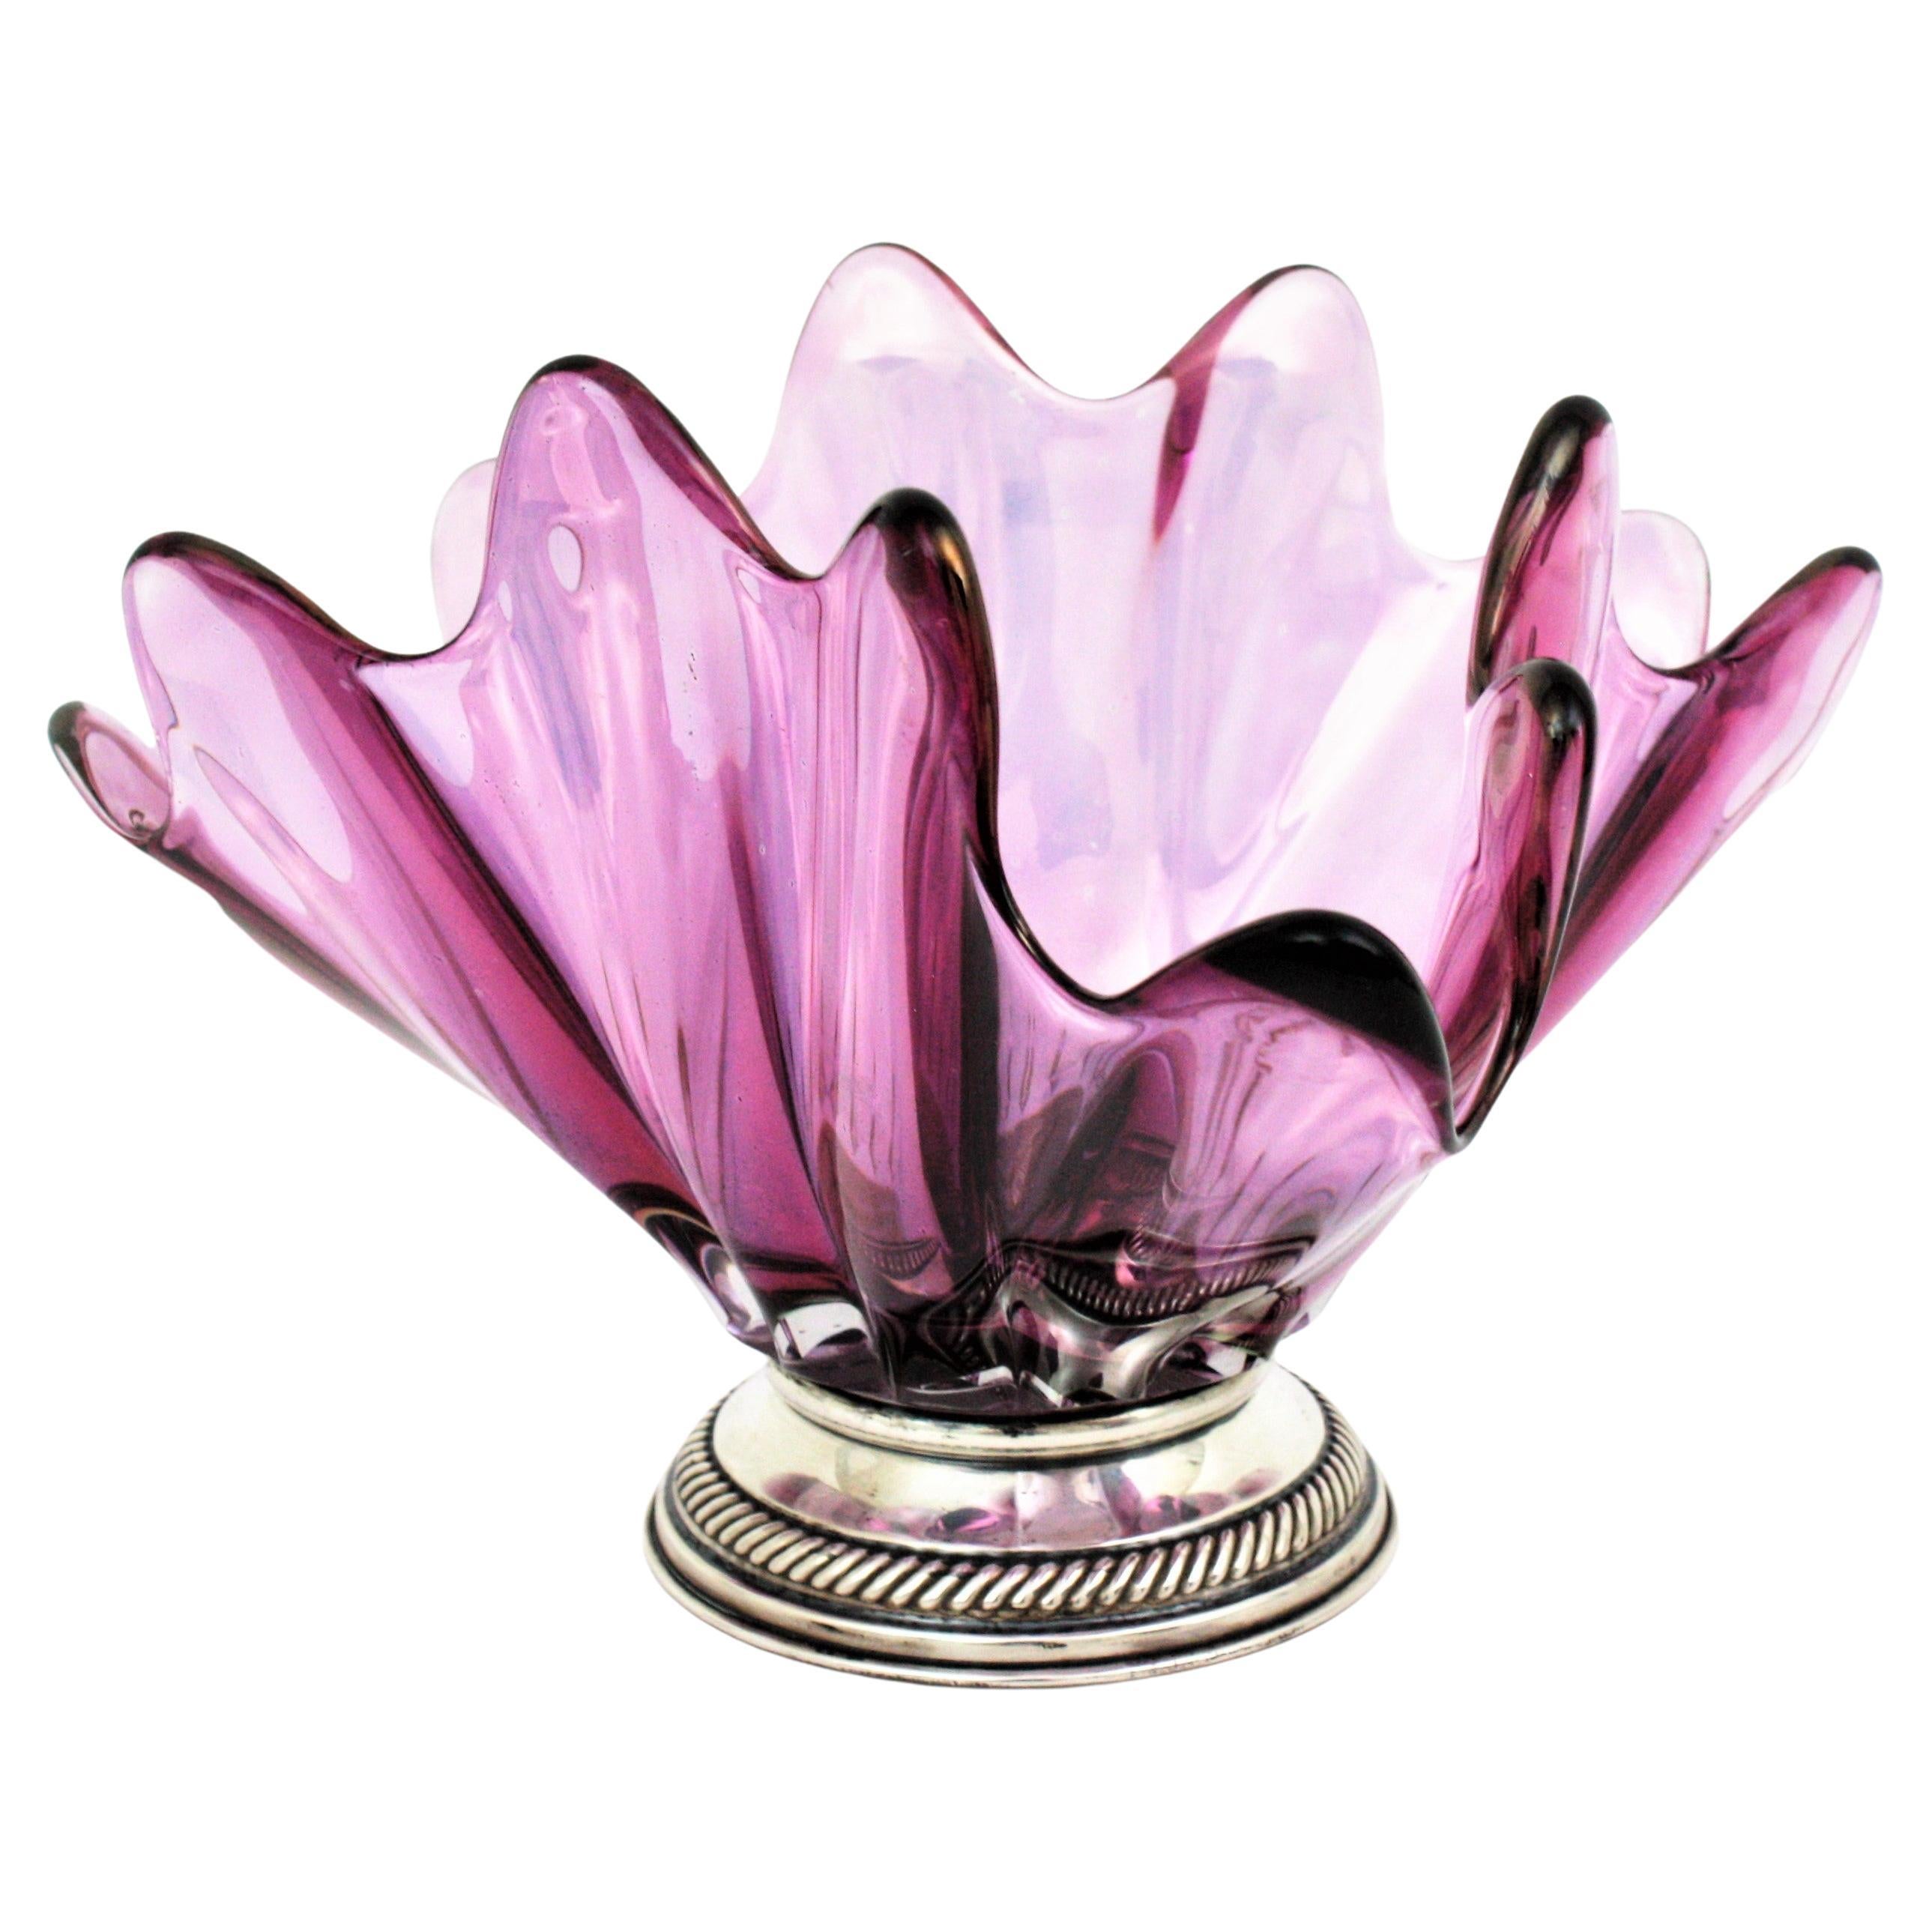 Vase aus mundgeblasenem lila italienischem Kunstglas mit Sockel aus Sterlingsilber Italien, 1950er Jahre.
Dieser auffällige und farbenfrohe  Centerpiece-Vase steht auf einem silbernen Sockel. Sie hat eine schöne Form mit naturalistischem Design und